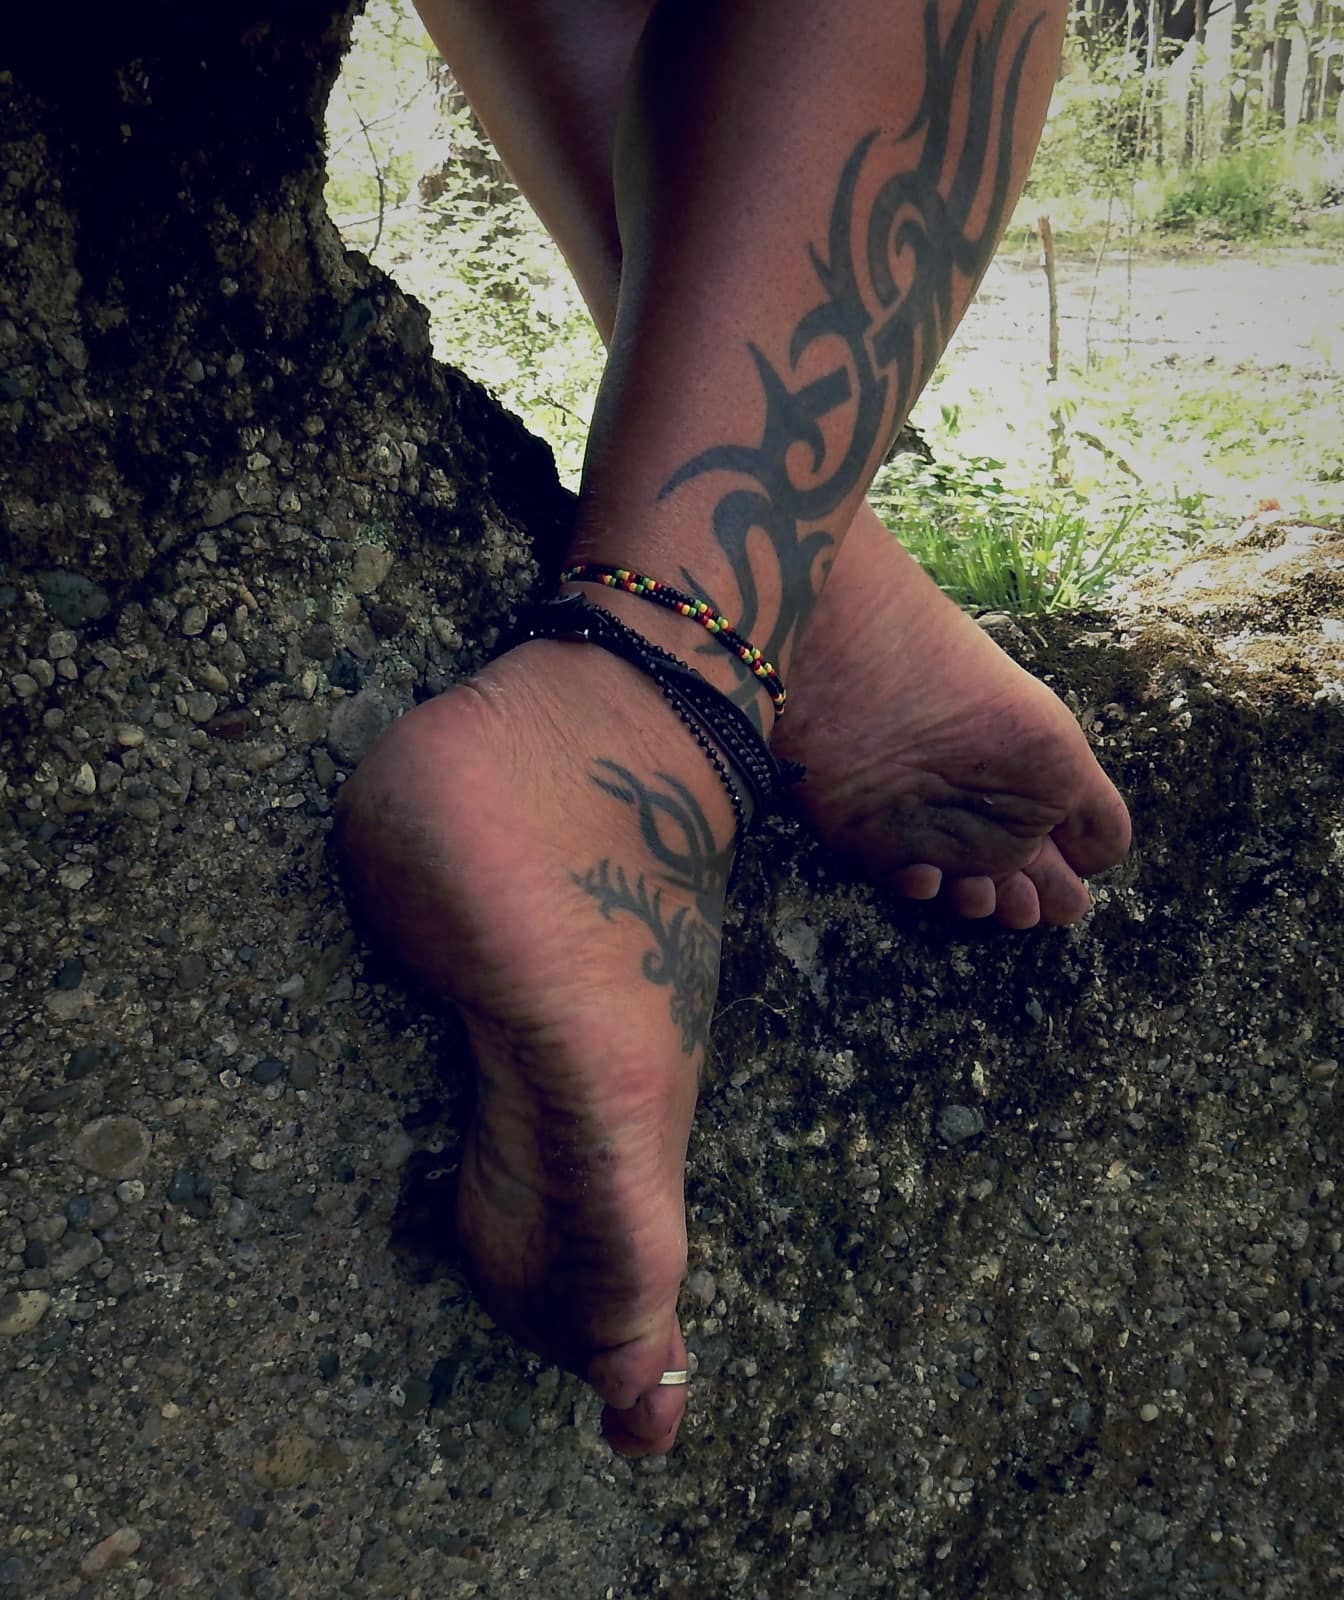 Beskidte barfodede ben med tatoveringer og benarmbånd på gammel beton